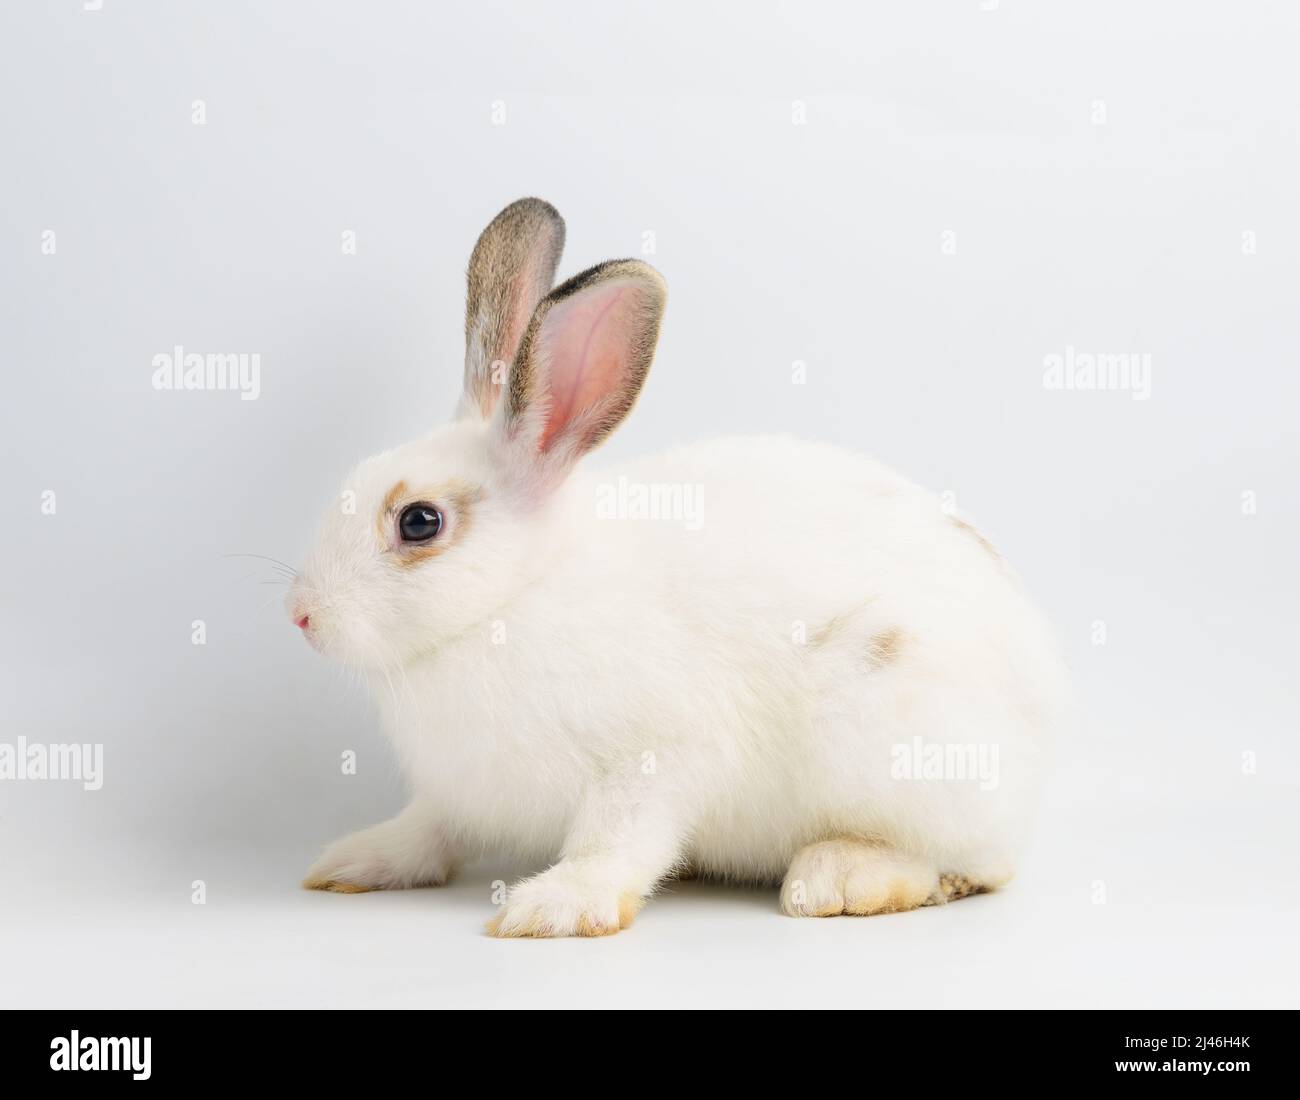 White rabbit on white background Stock Photo